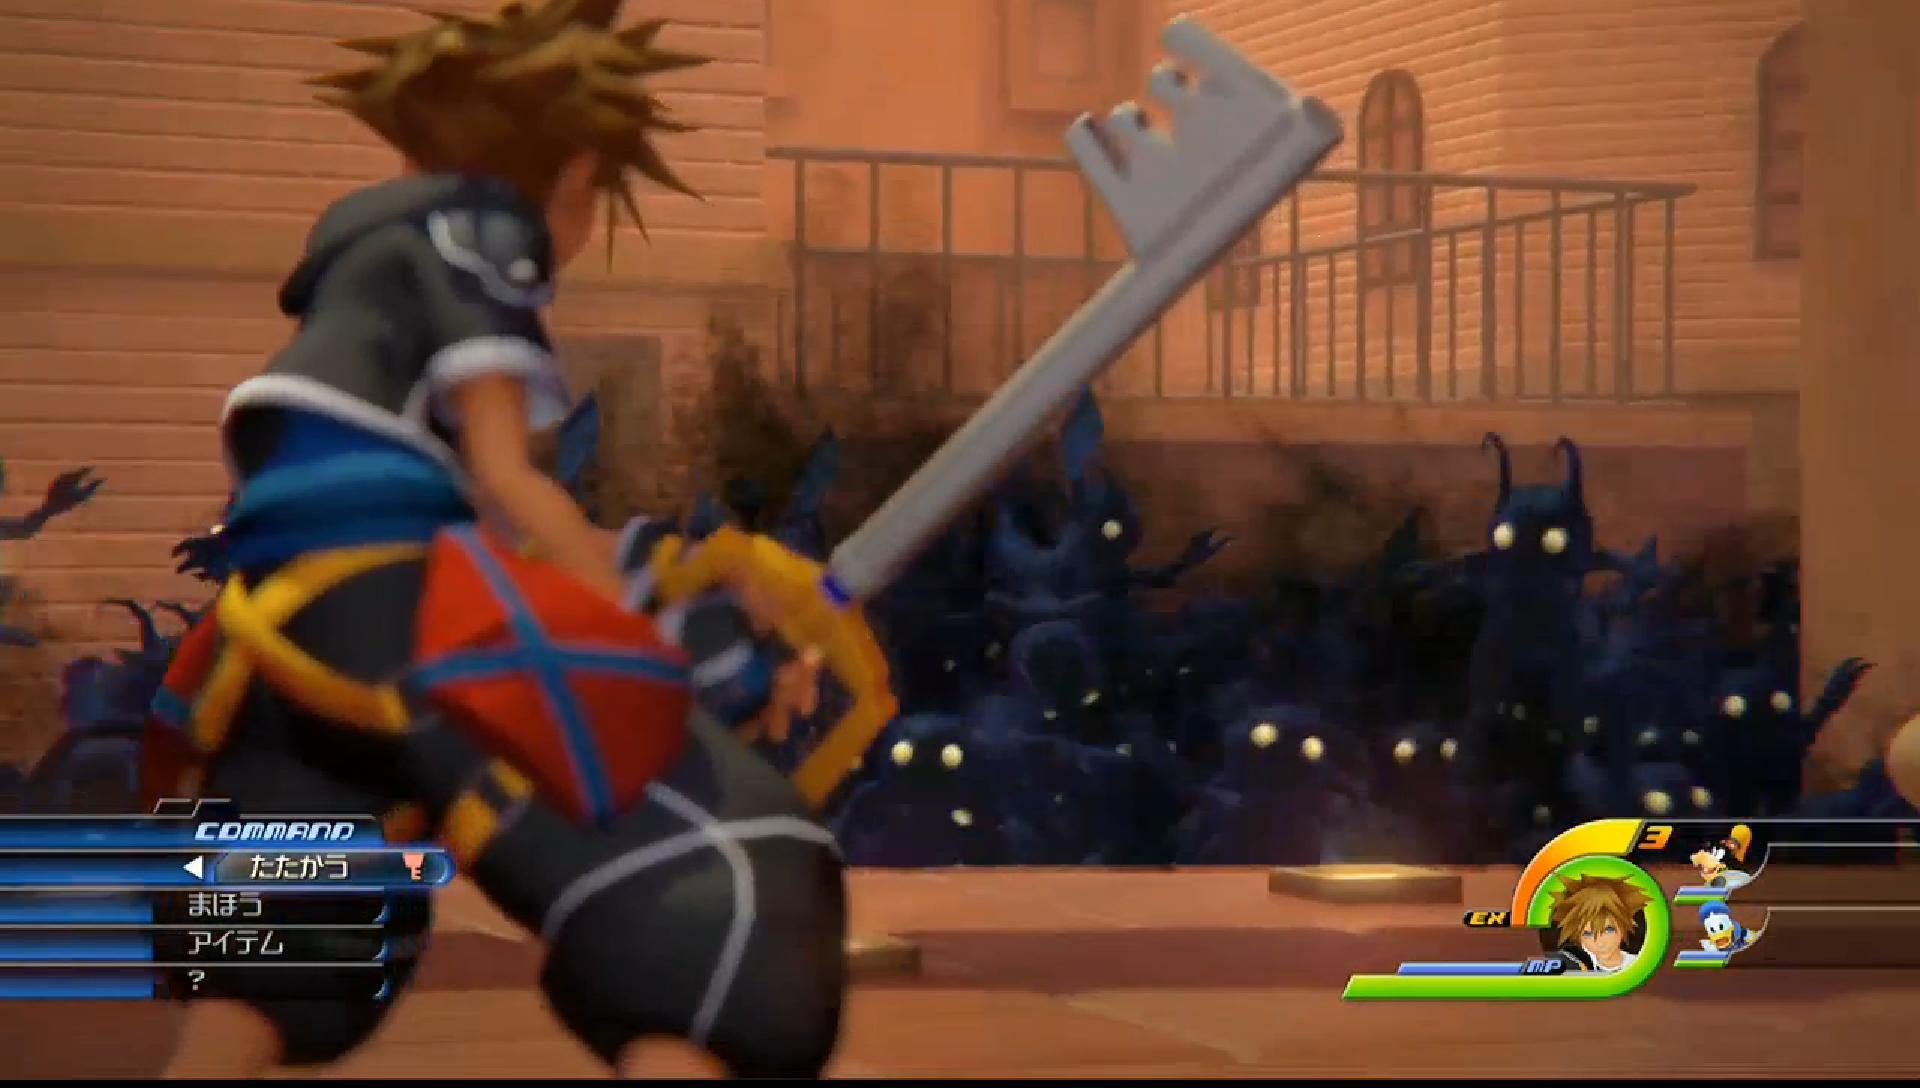 Al fin, salio el gameplay trailer de Kingdom Hearts III